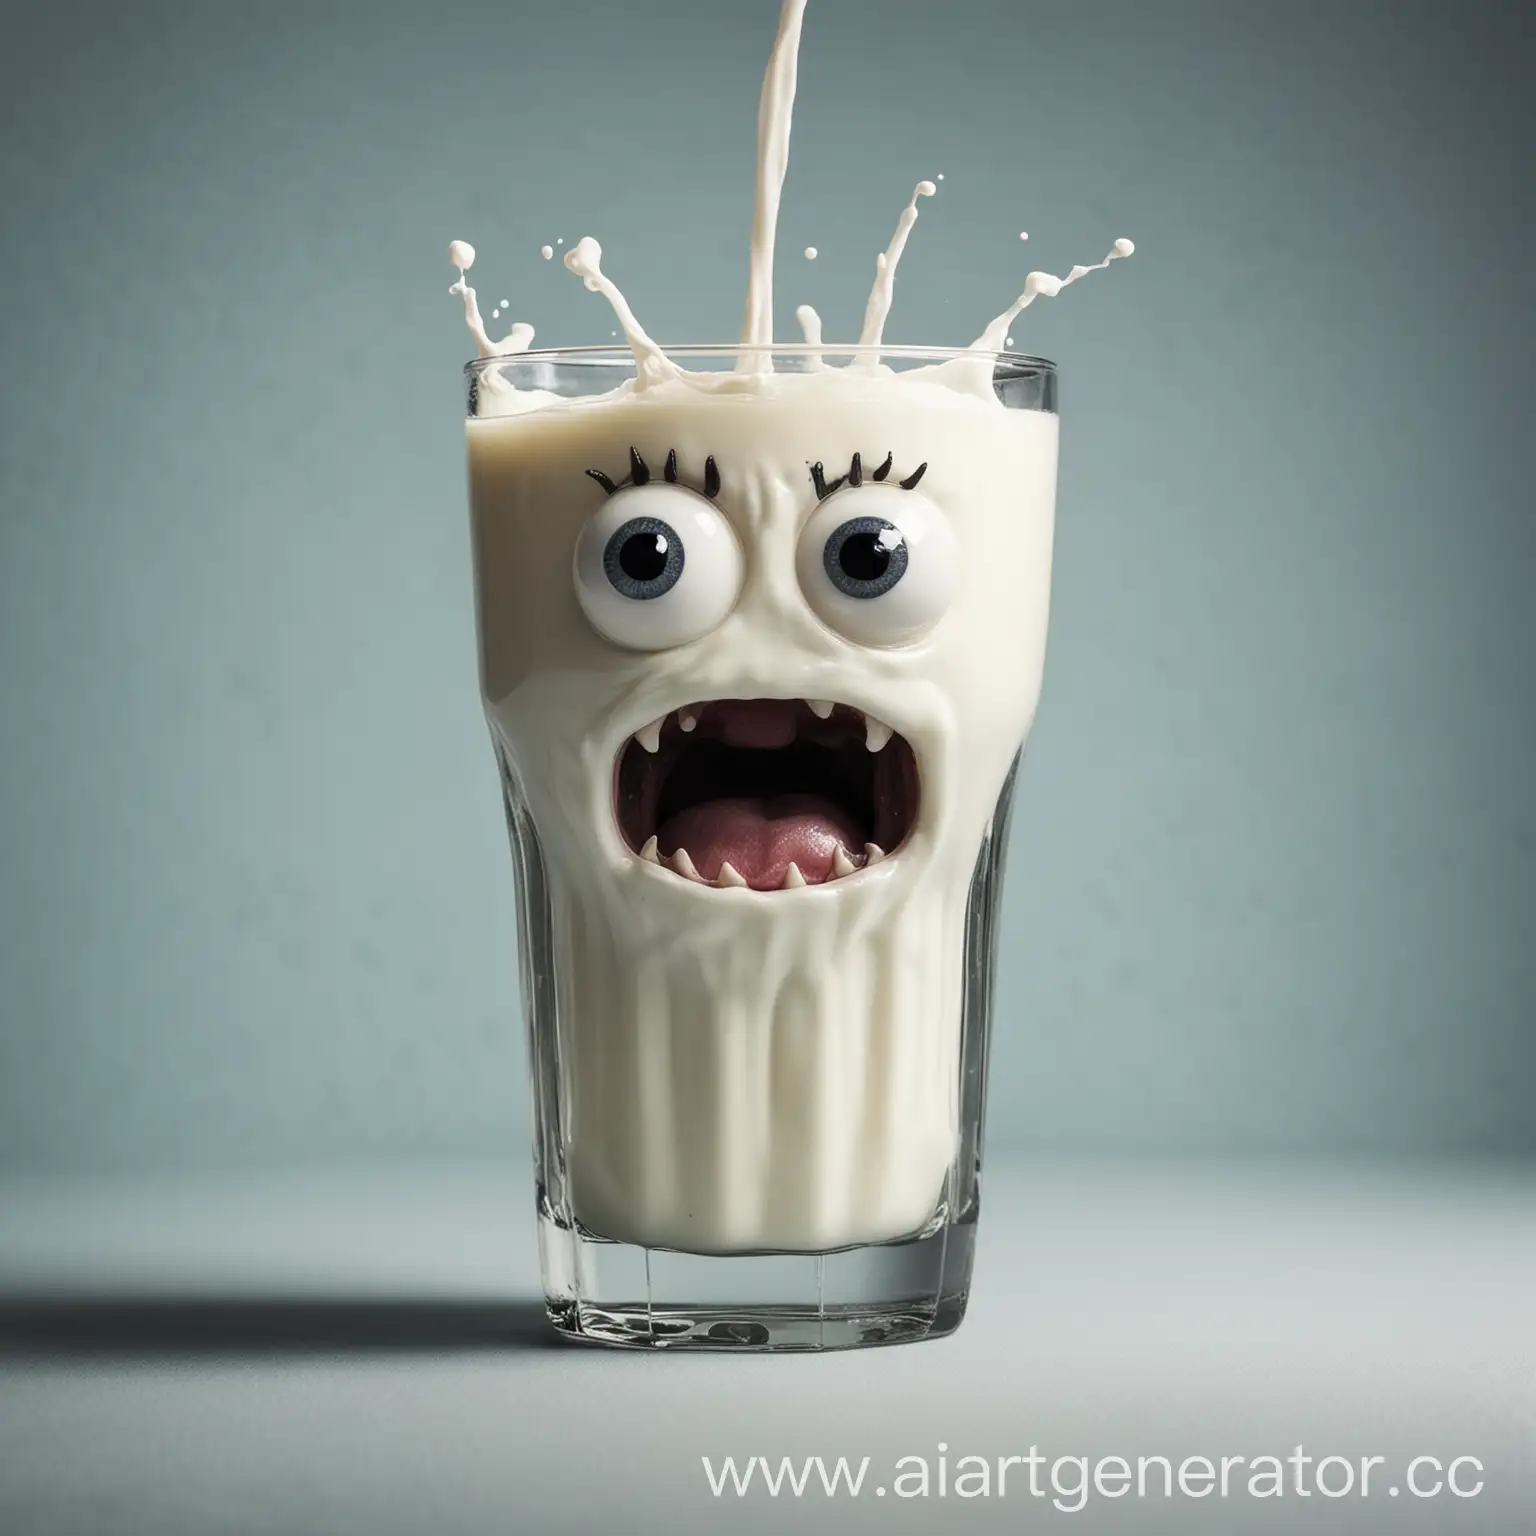 Terrifying-Milk-Monster-in-a-Glass